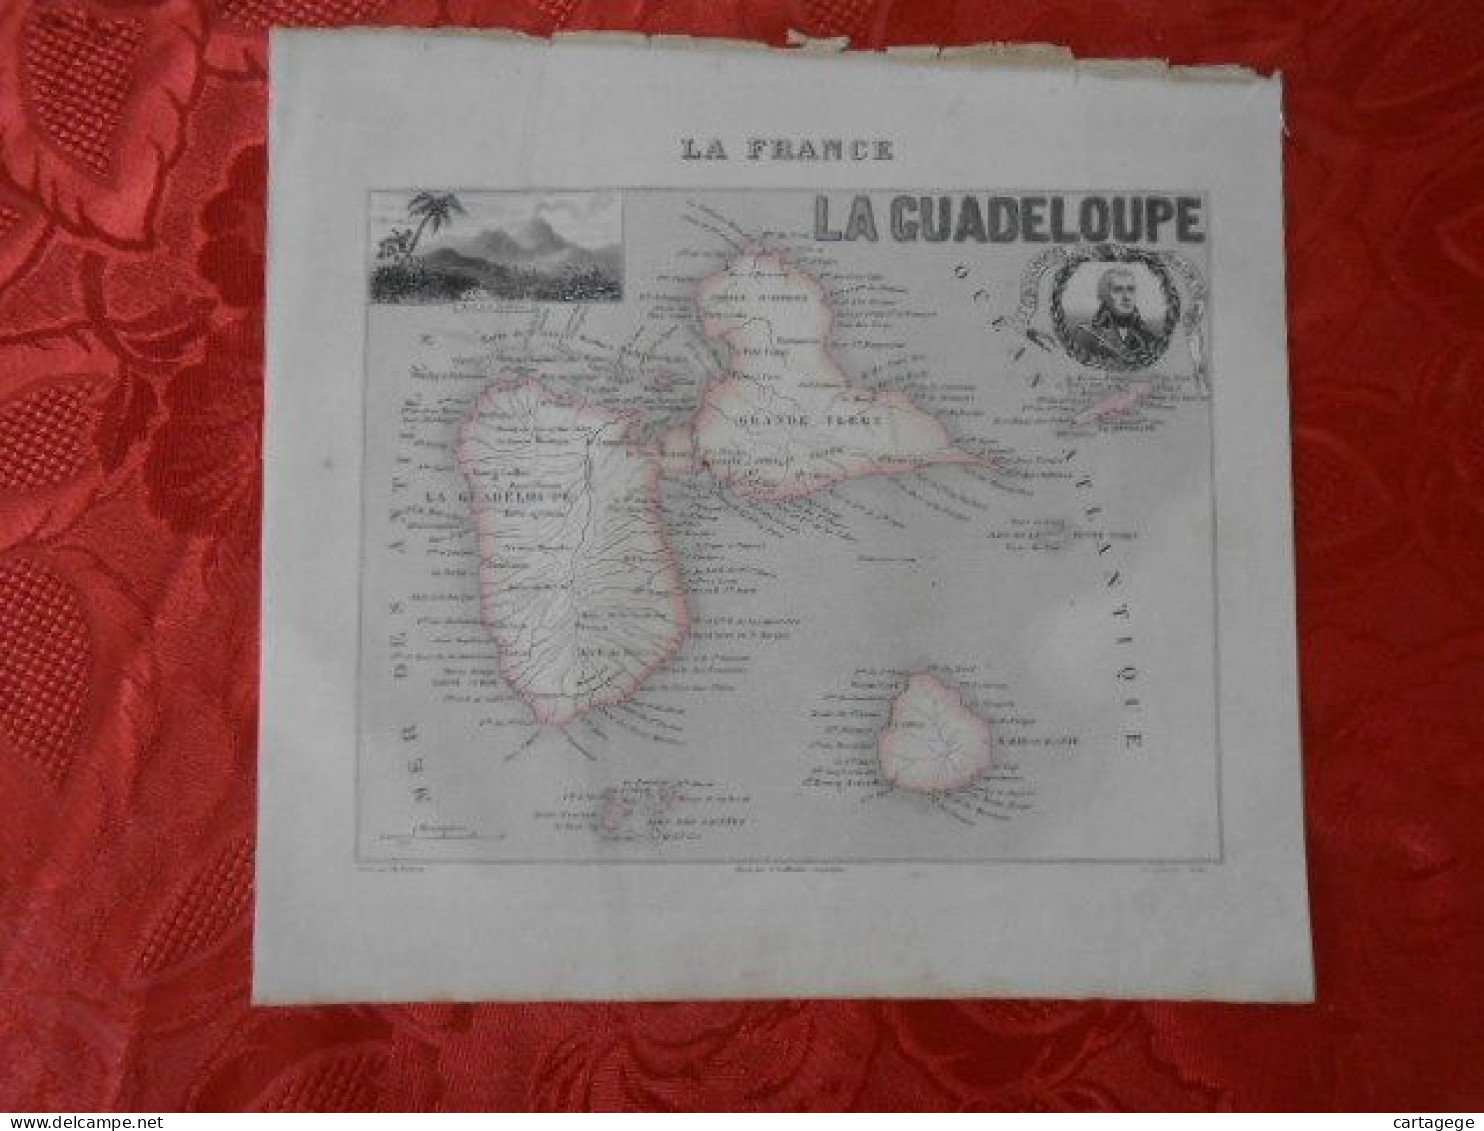 CARTE VUILLEMIN DEPARTEMENT DE LA GUADELOUPE - Cartes Géographiques